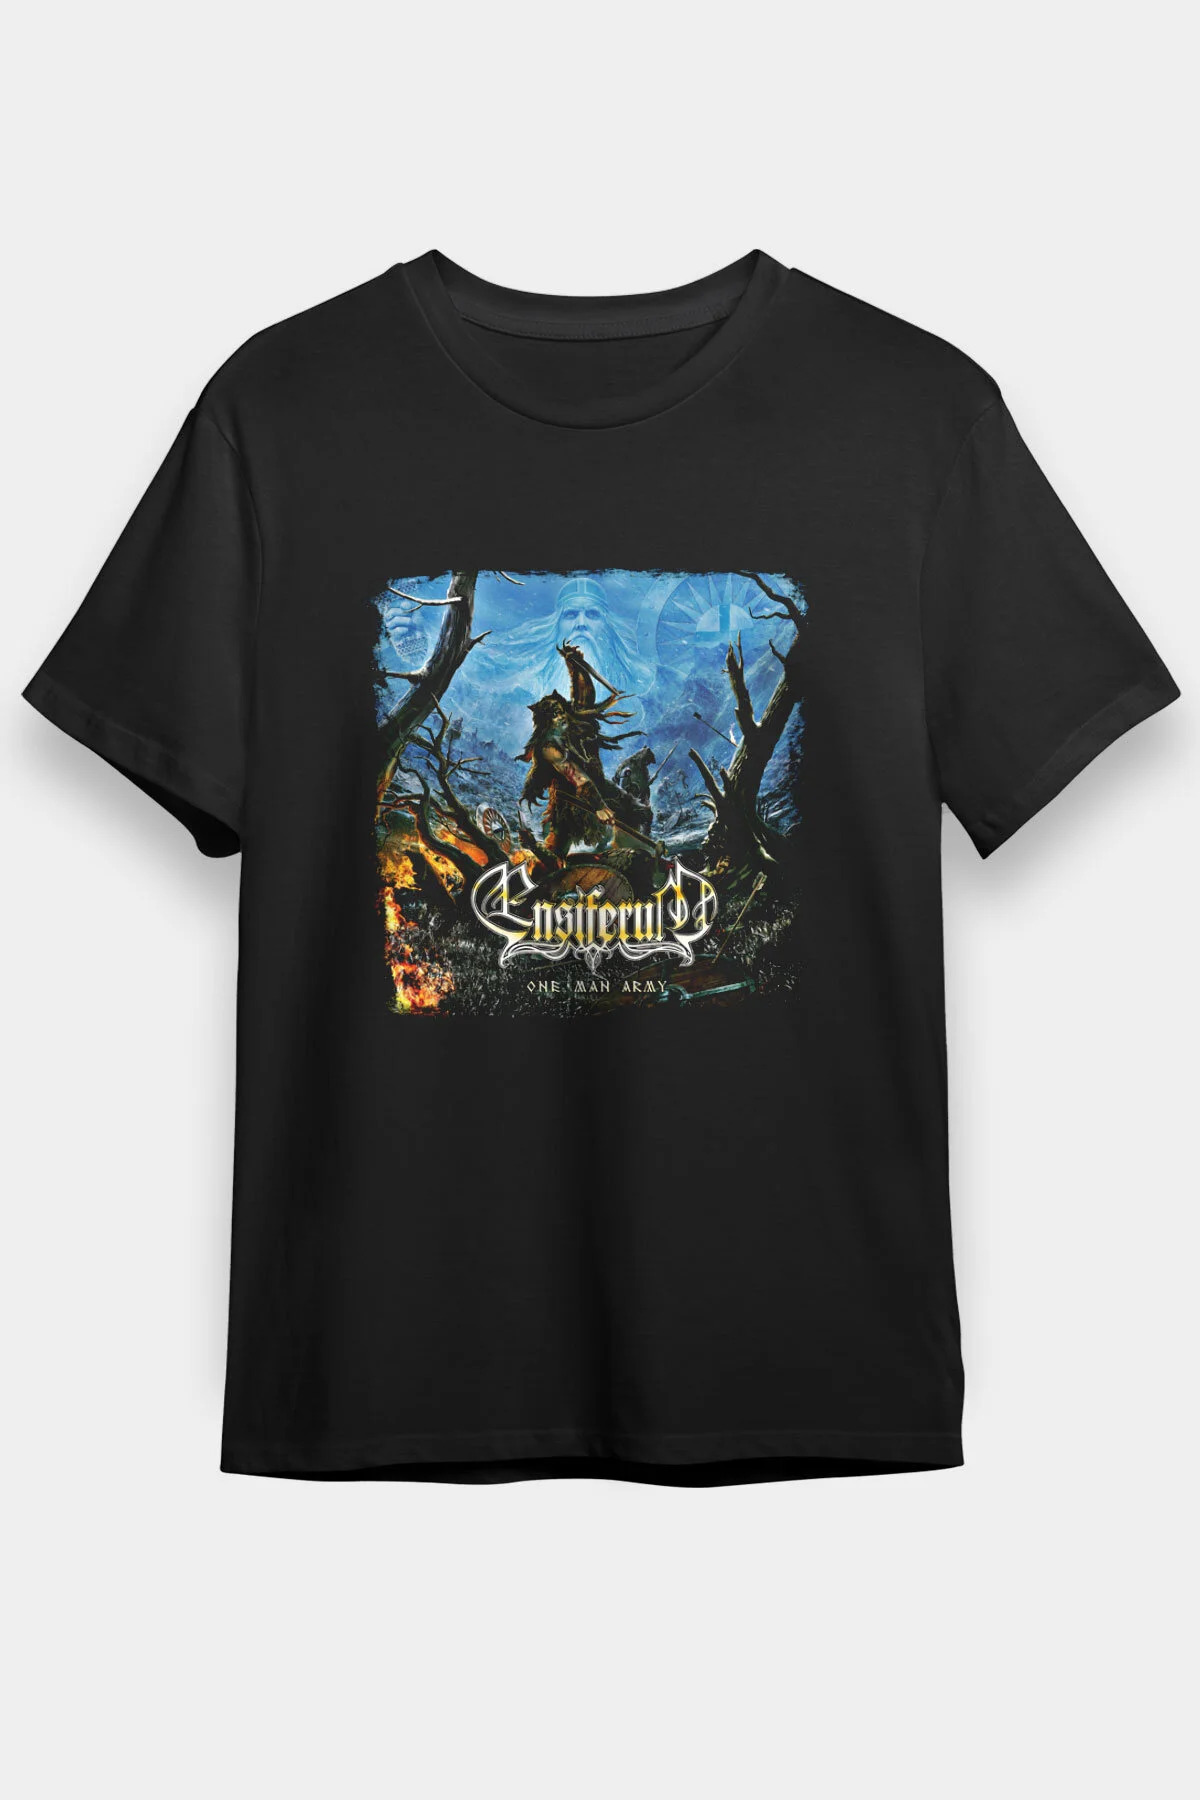 Ensiferum  T shirt , Music Band ,Unisex Tshirt 10